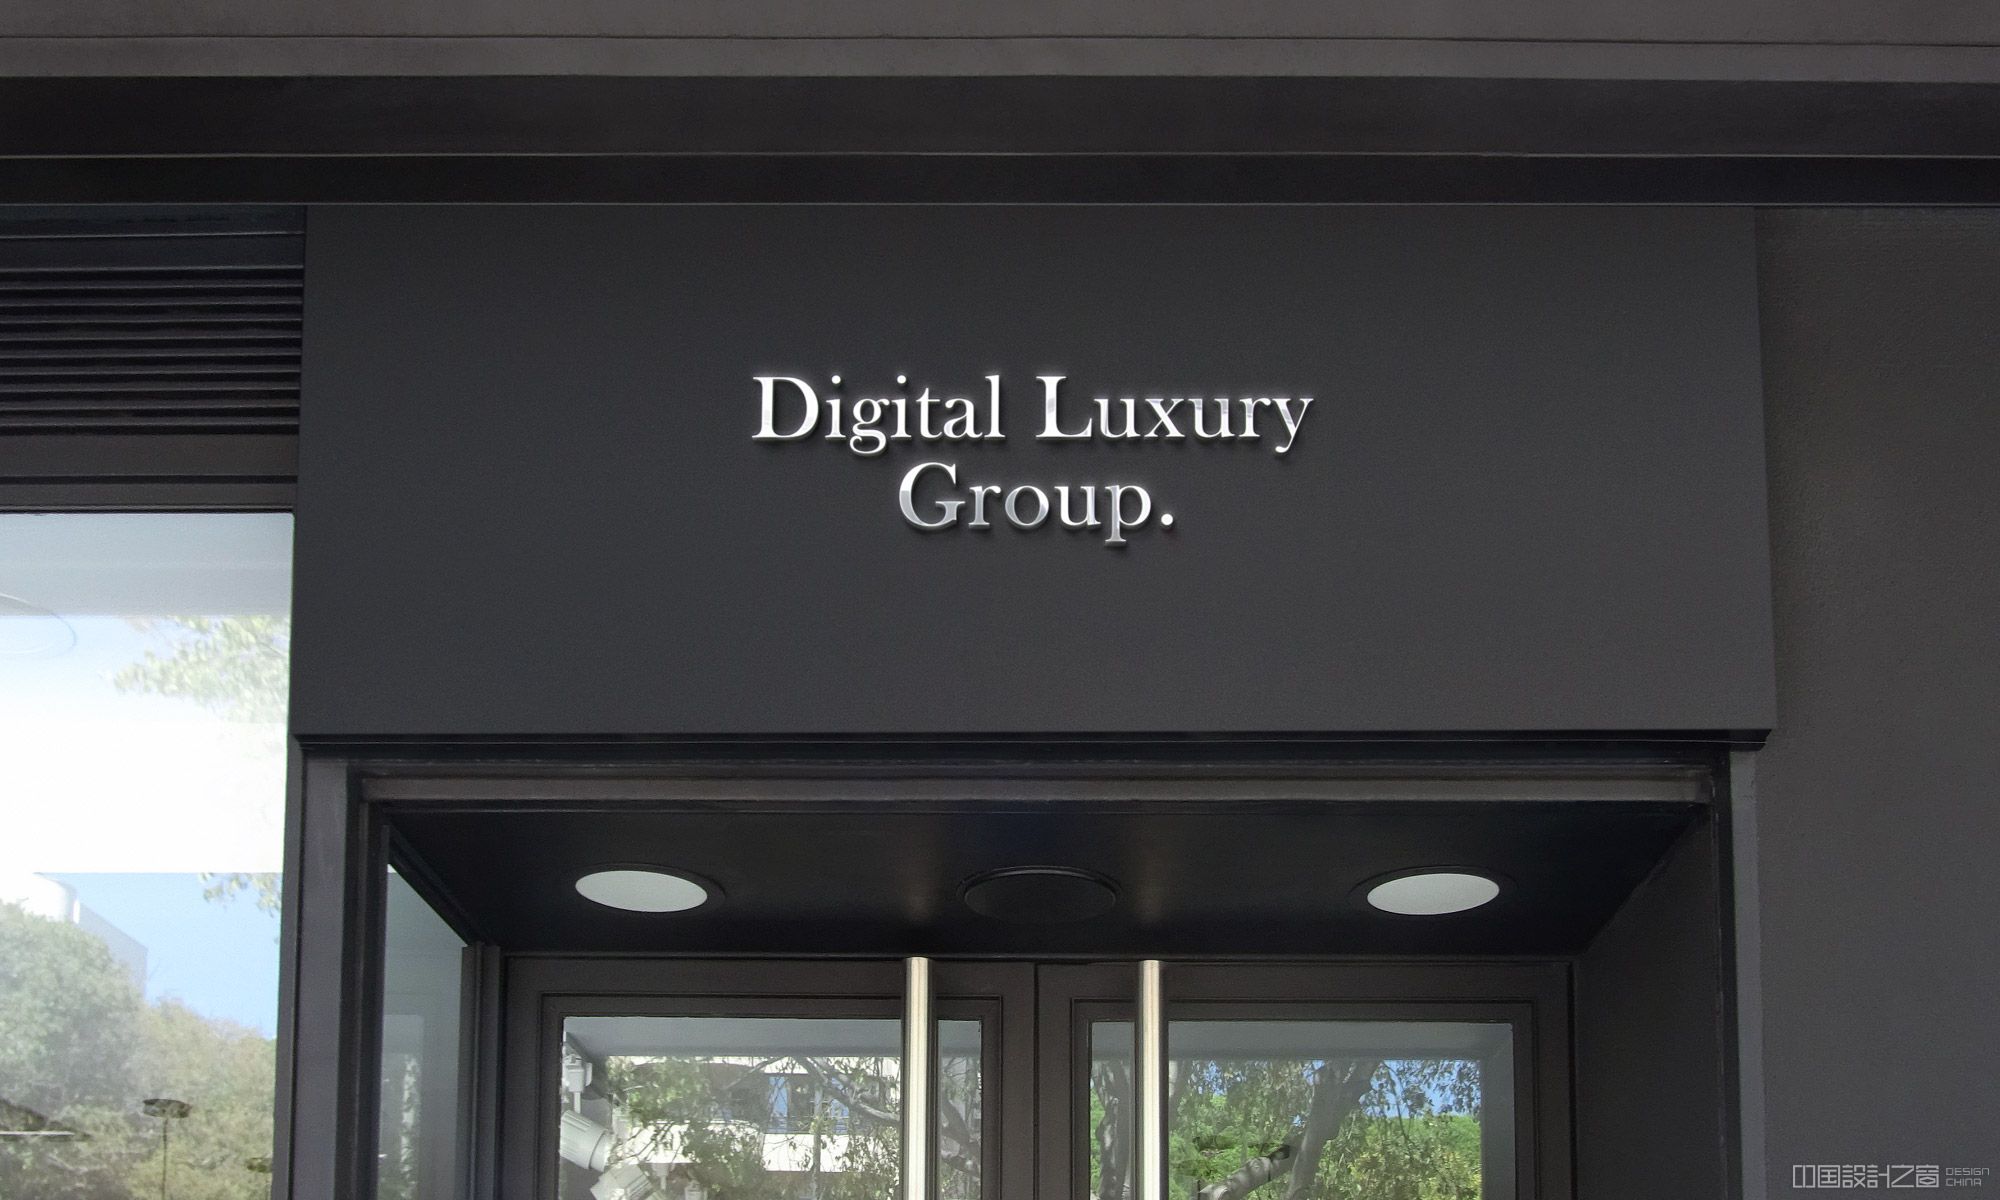 Digital Luxury Group signage